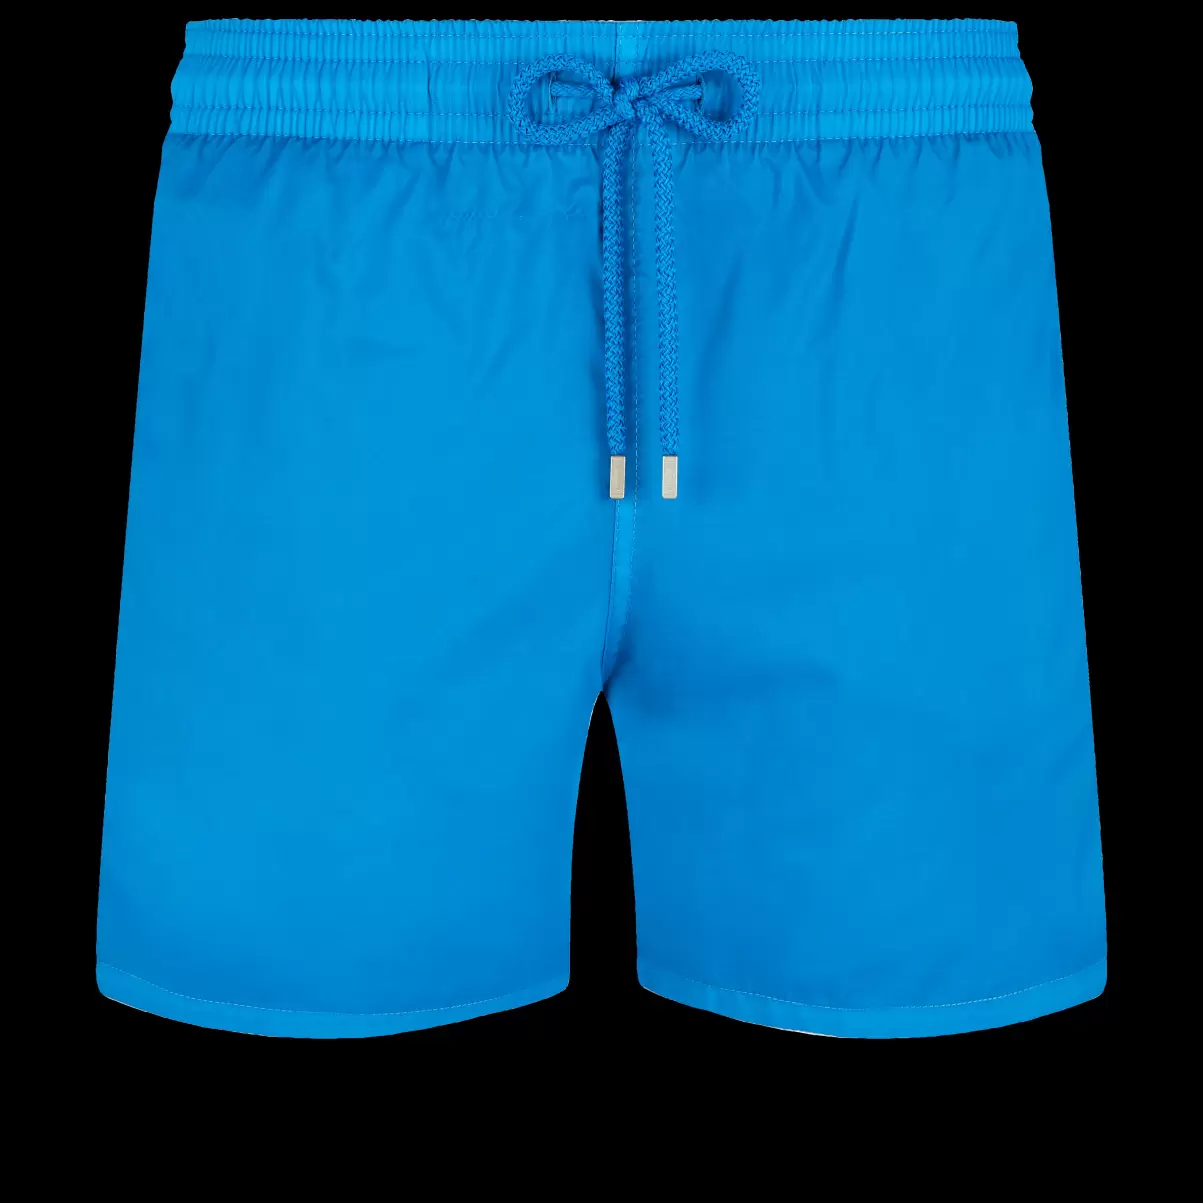 Markt Herren Ultraleichte Und Verstaubare Solid Badeshorts Für Herren Hawaii Blue / Blau Vilebrequin Klassische Dünne Stoffe - 3